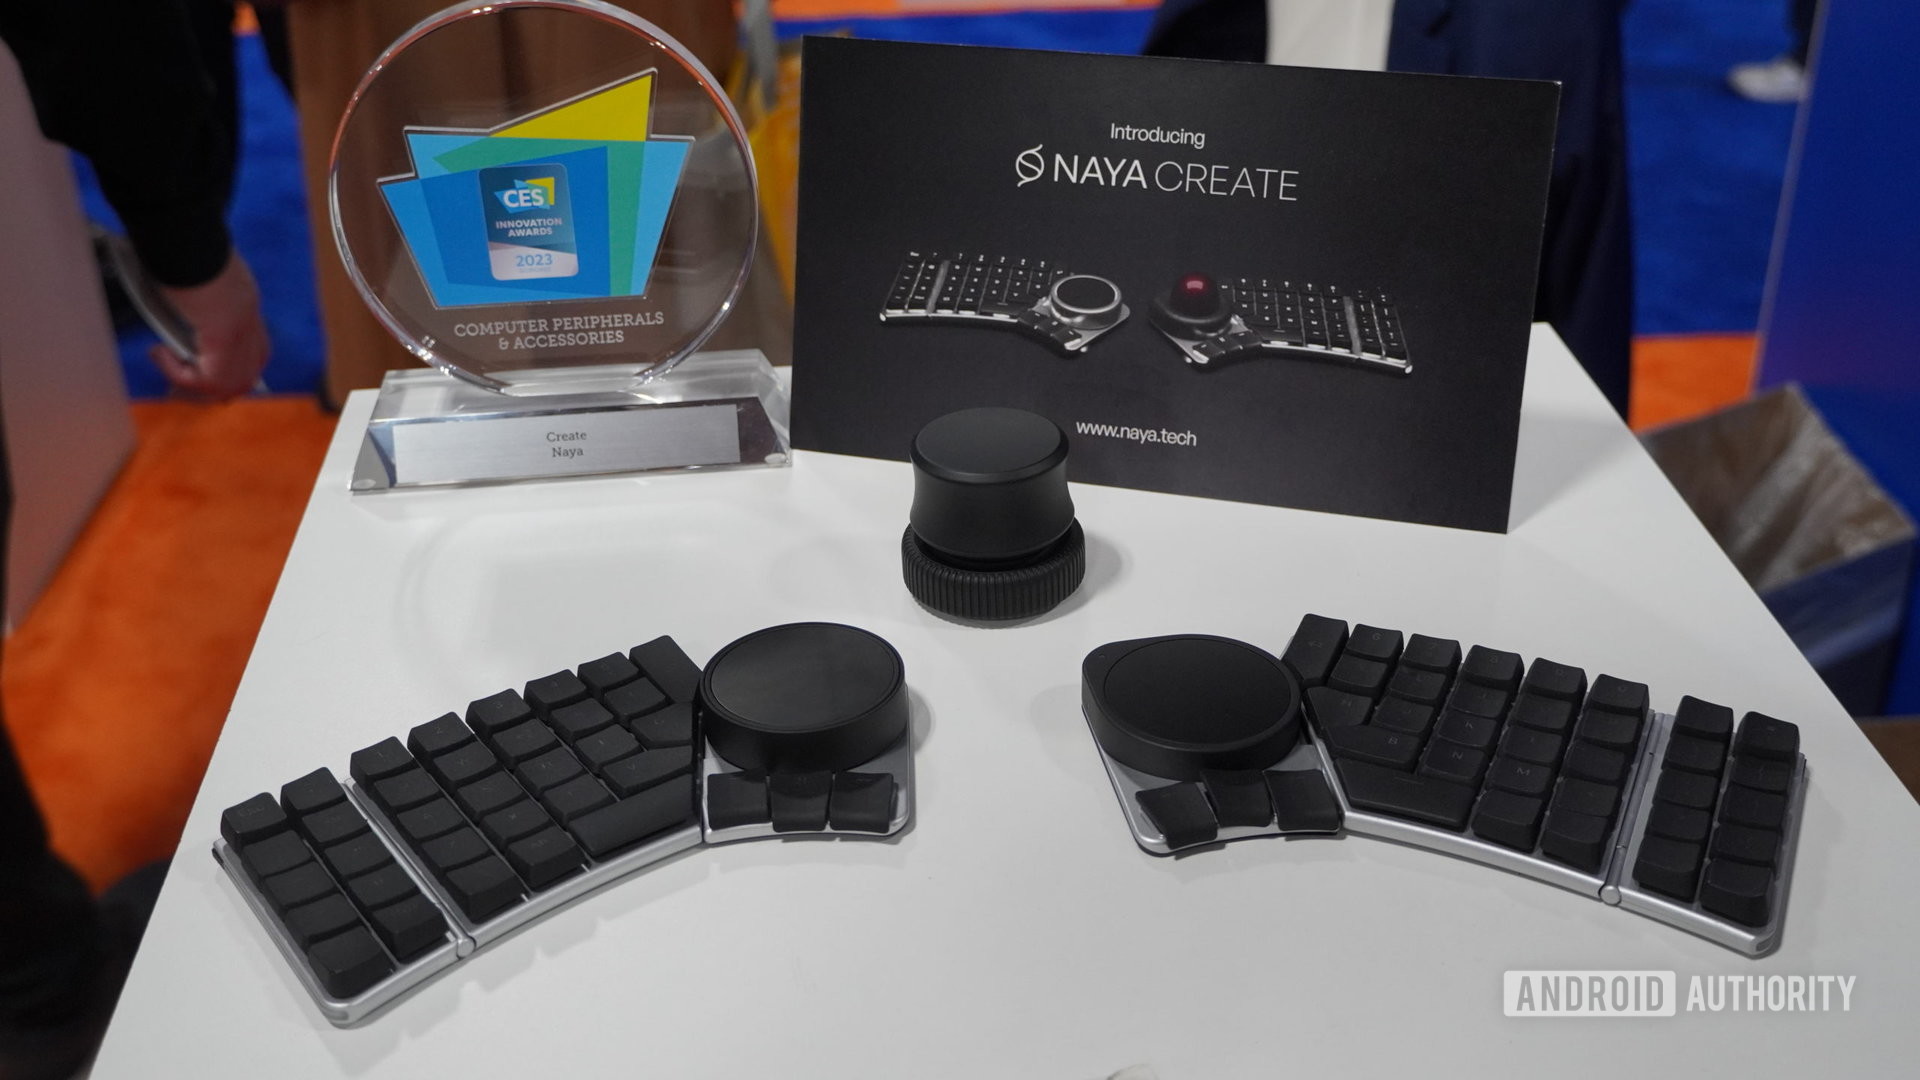 Naya Create keyboard CES award 2